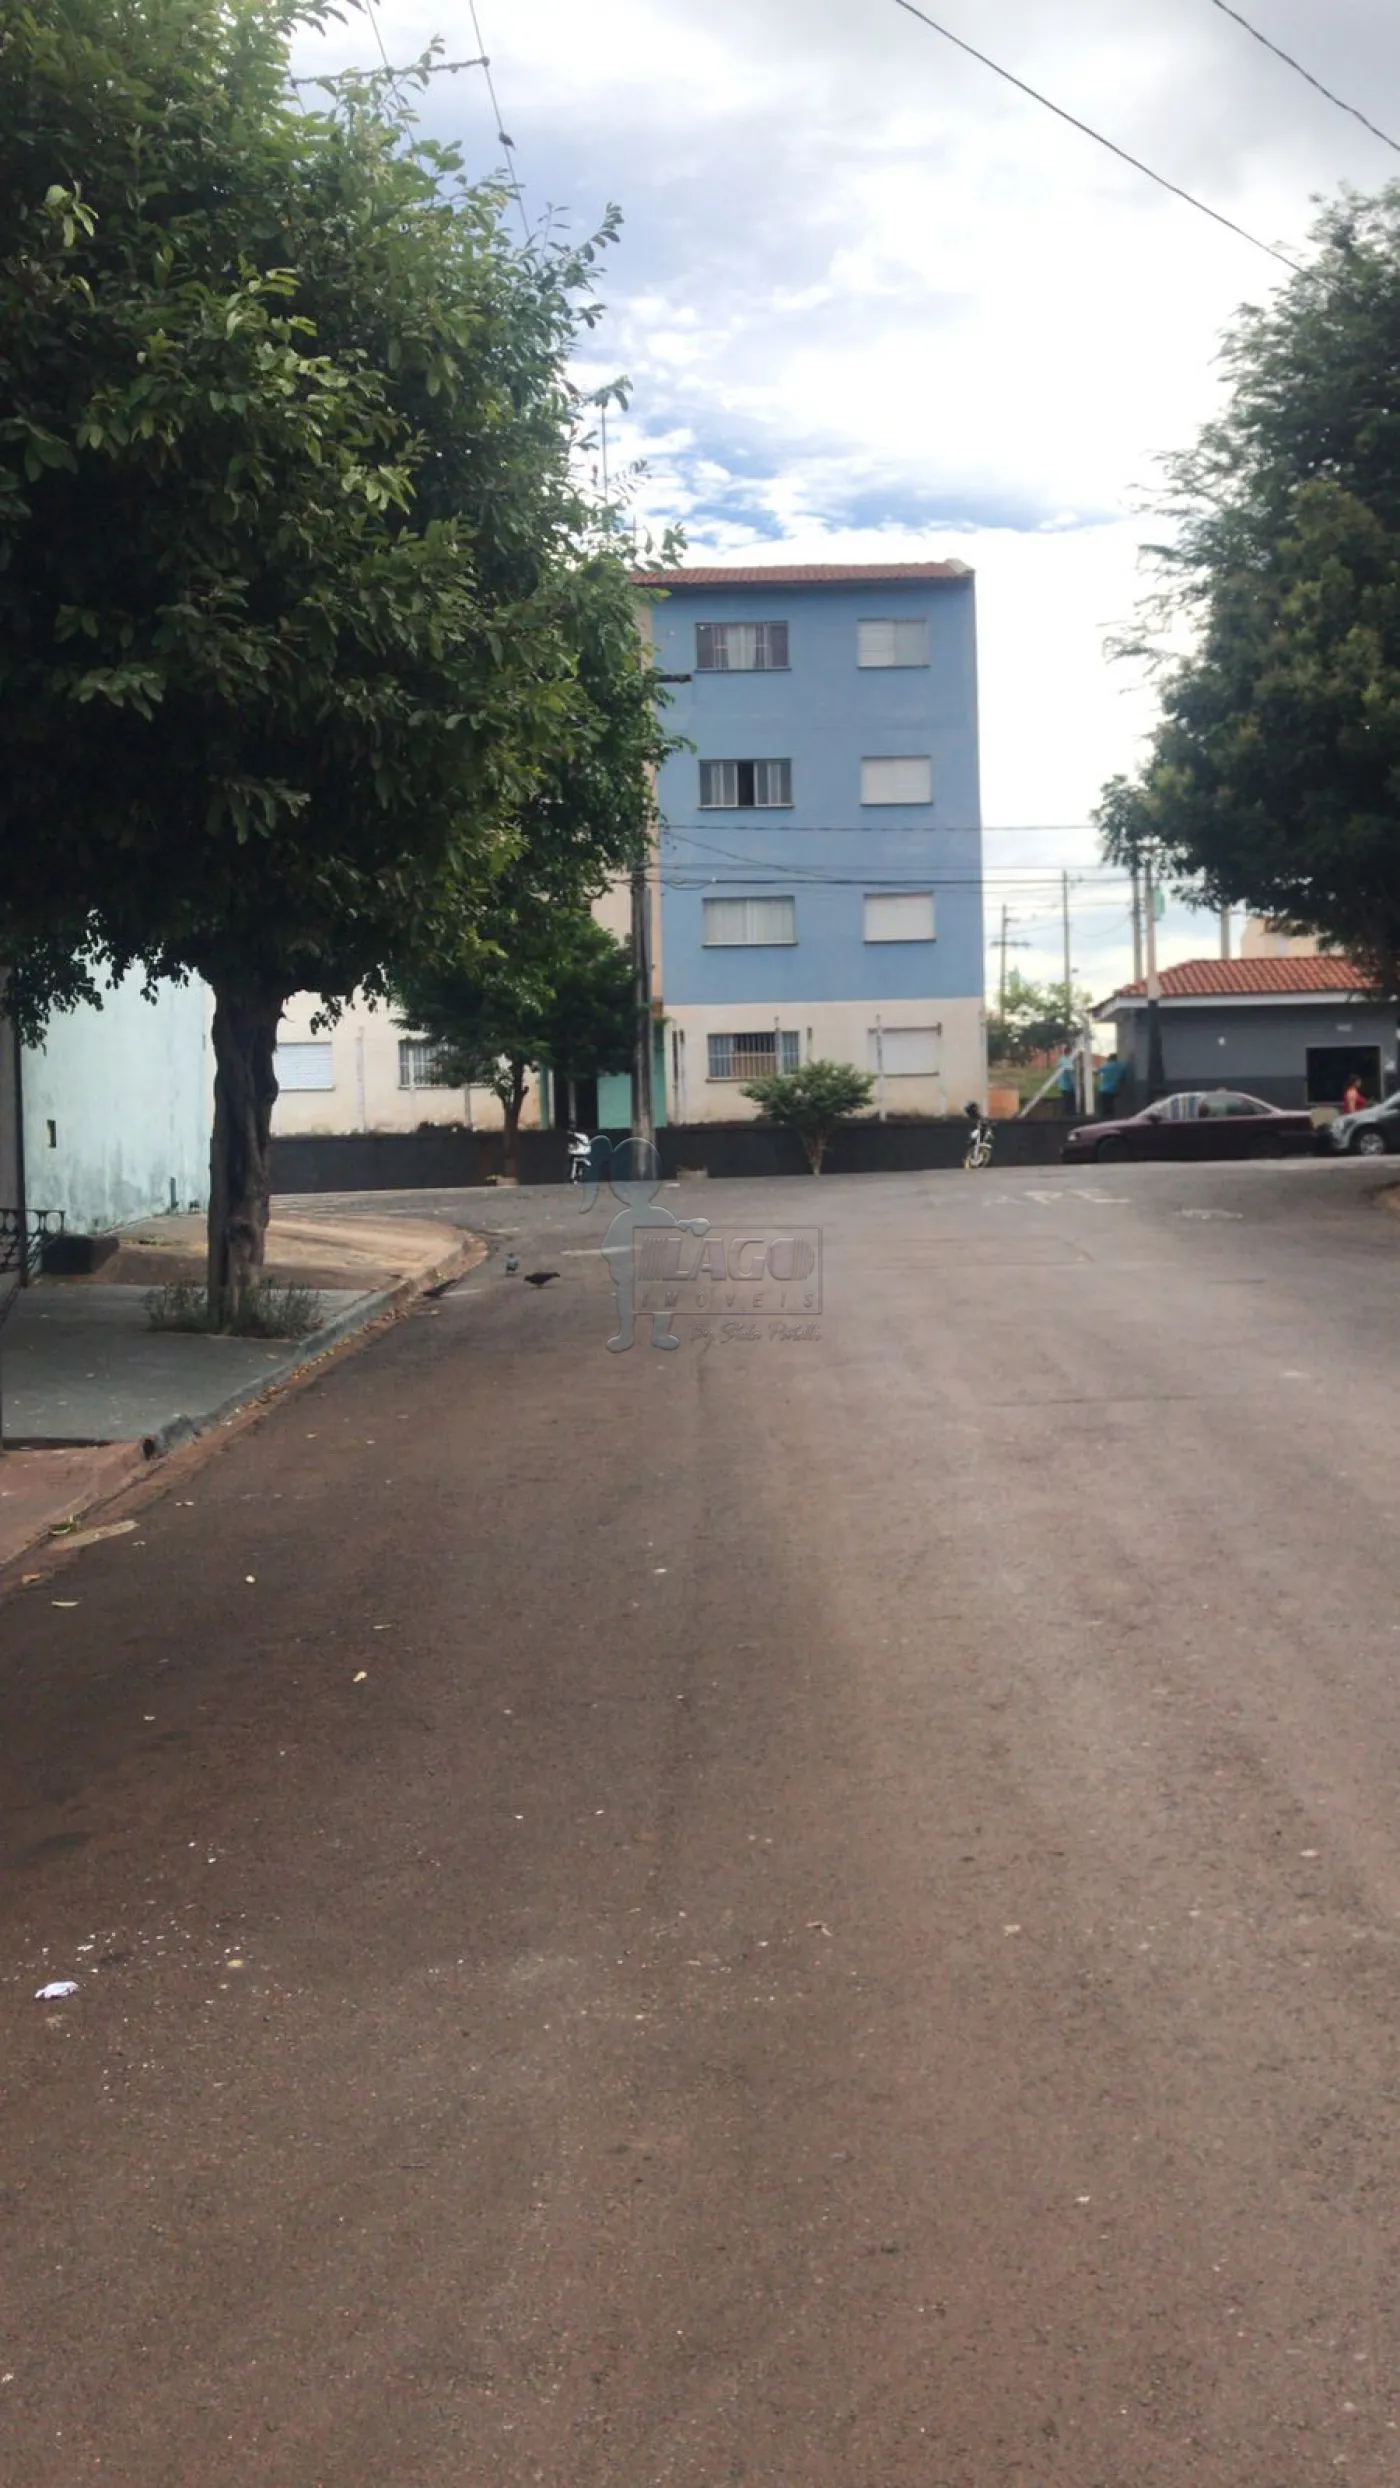 Comprar Apartamento / Padrão em Ribeirão Preto R$ 96.000,00 - Foto 5